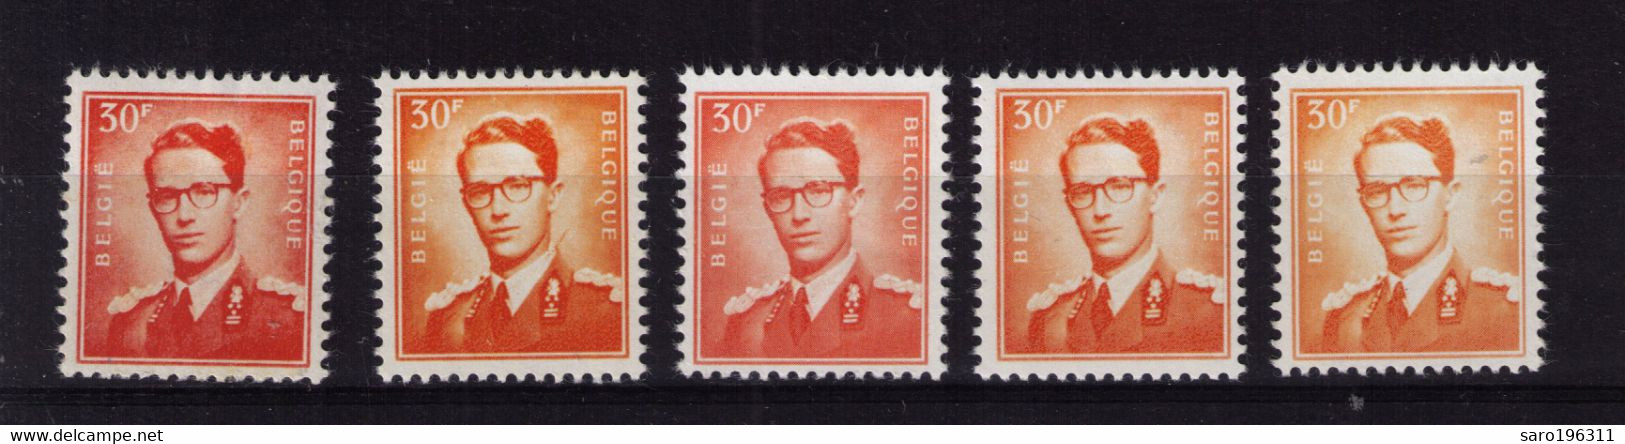 ROI BAUDOUIN  ** / MNH 30 FR    5 NUANCES  à  6,99 - Unused Stamps